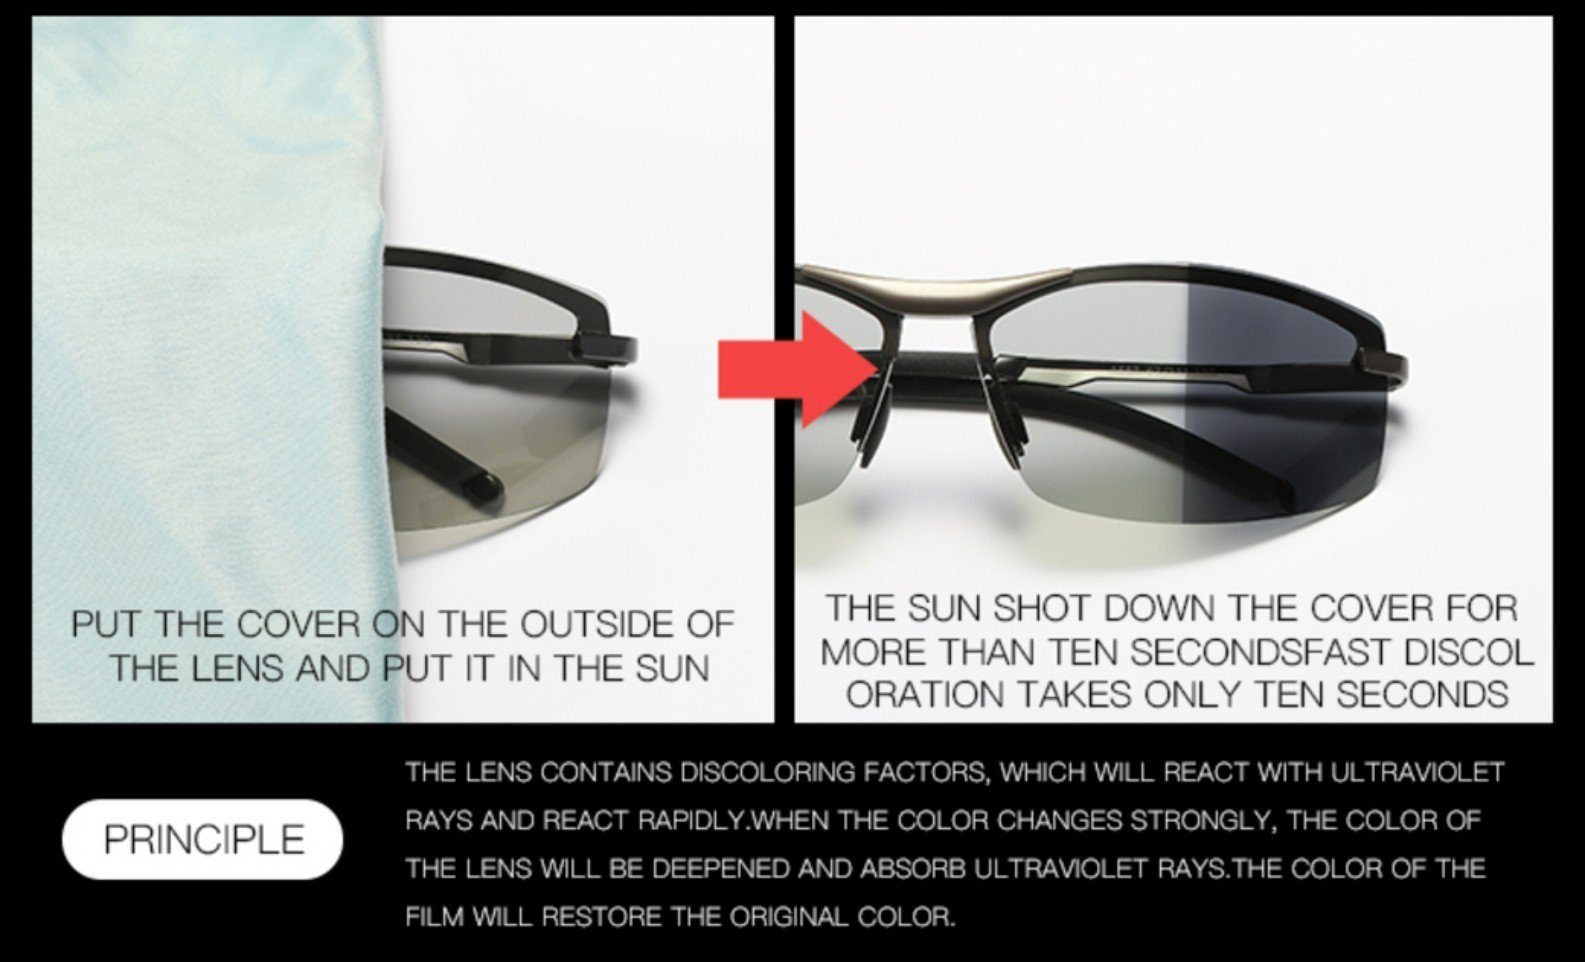 PACIEA Sonnenbrille Sonnenbrille Sportbrille Herren Schutz 100% polarisiert schwarzgelb UV400 Leicht